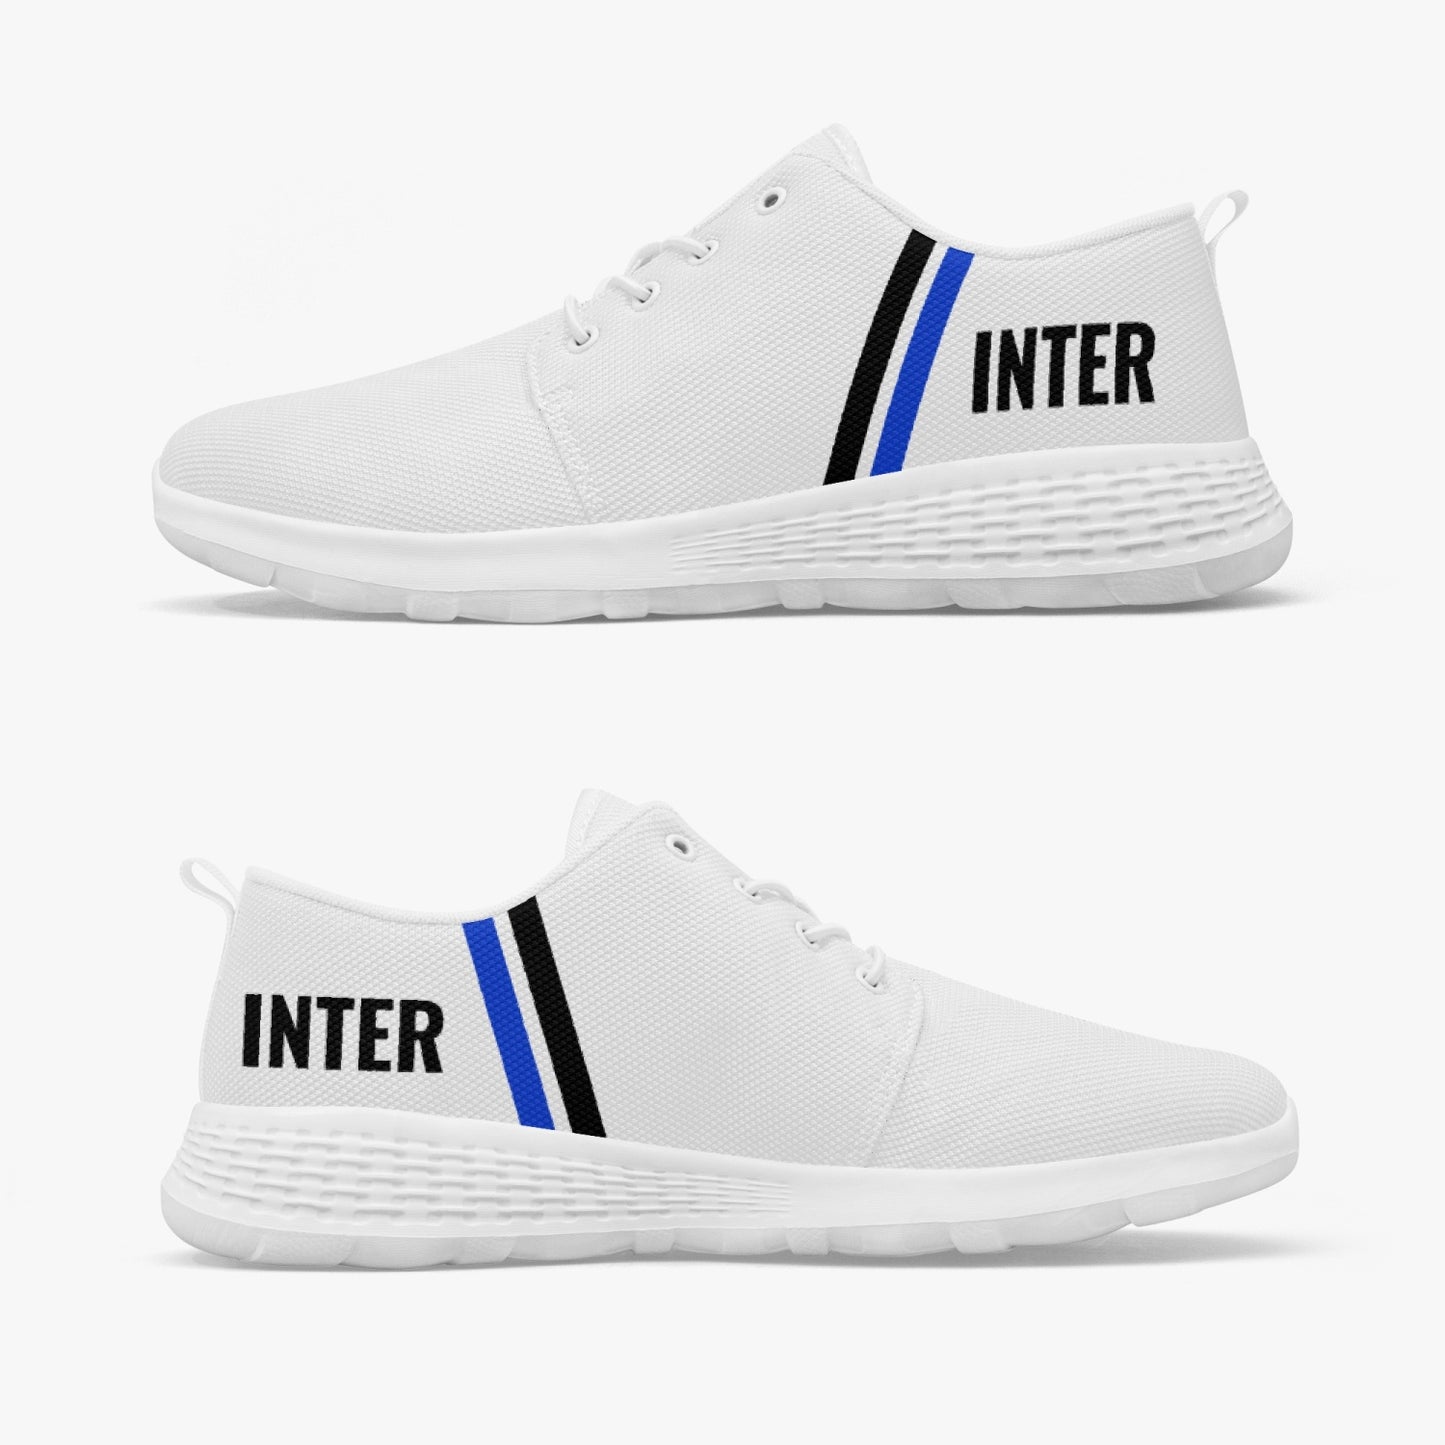 Scarpe da corsa dell'Inter